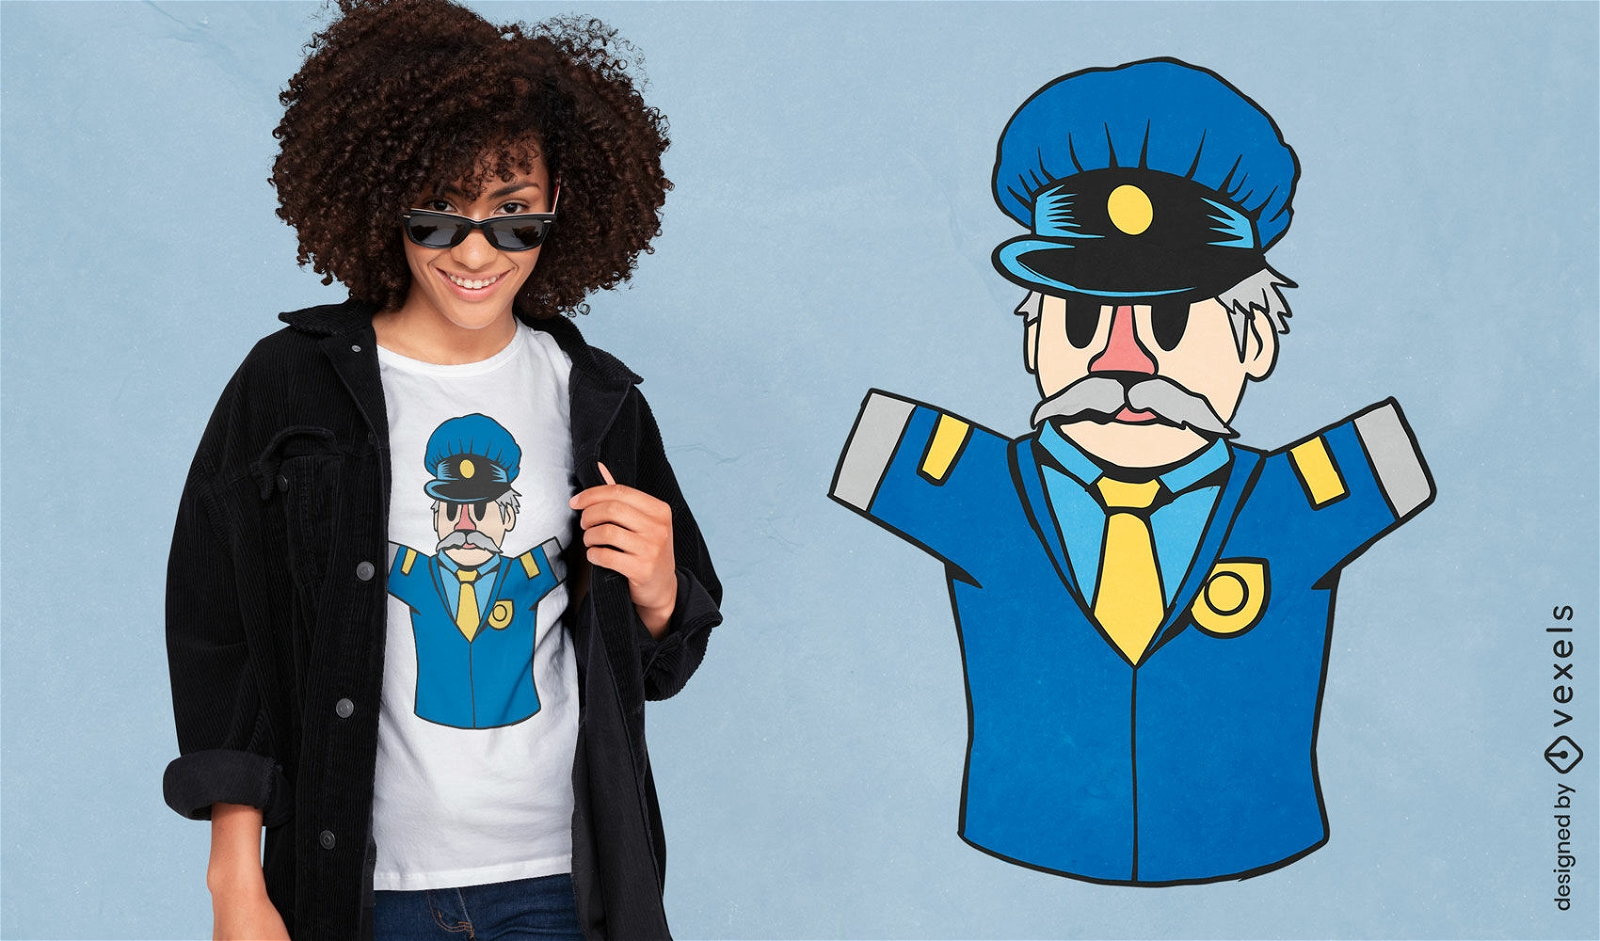 Puppet officer t-shirt design